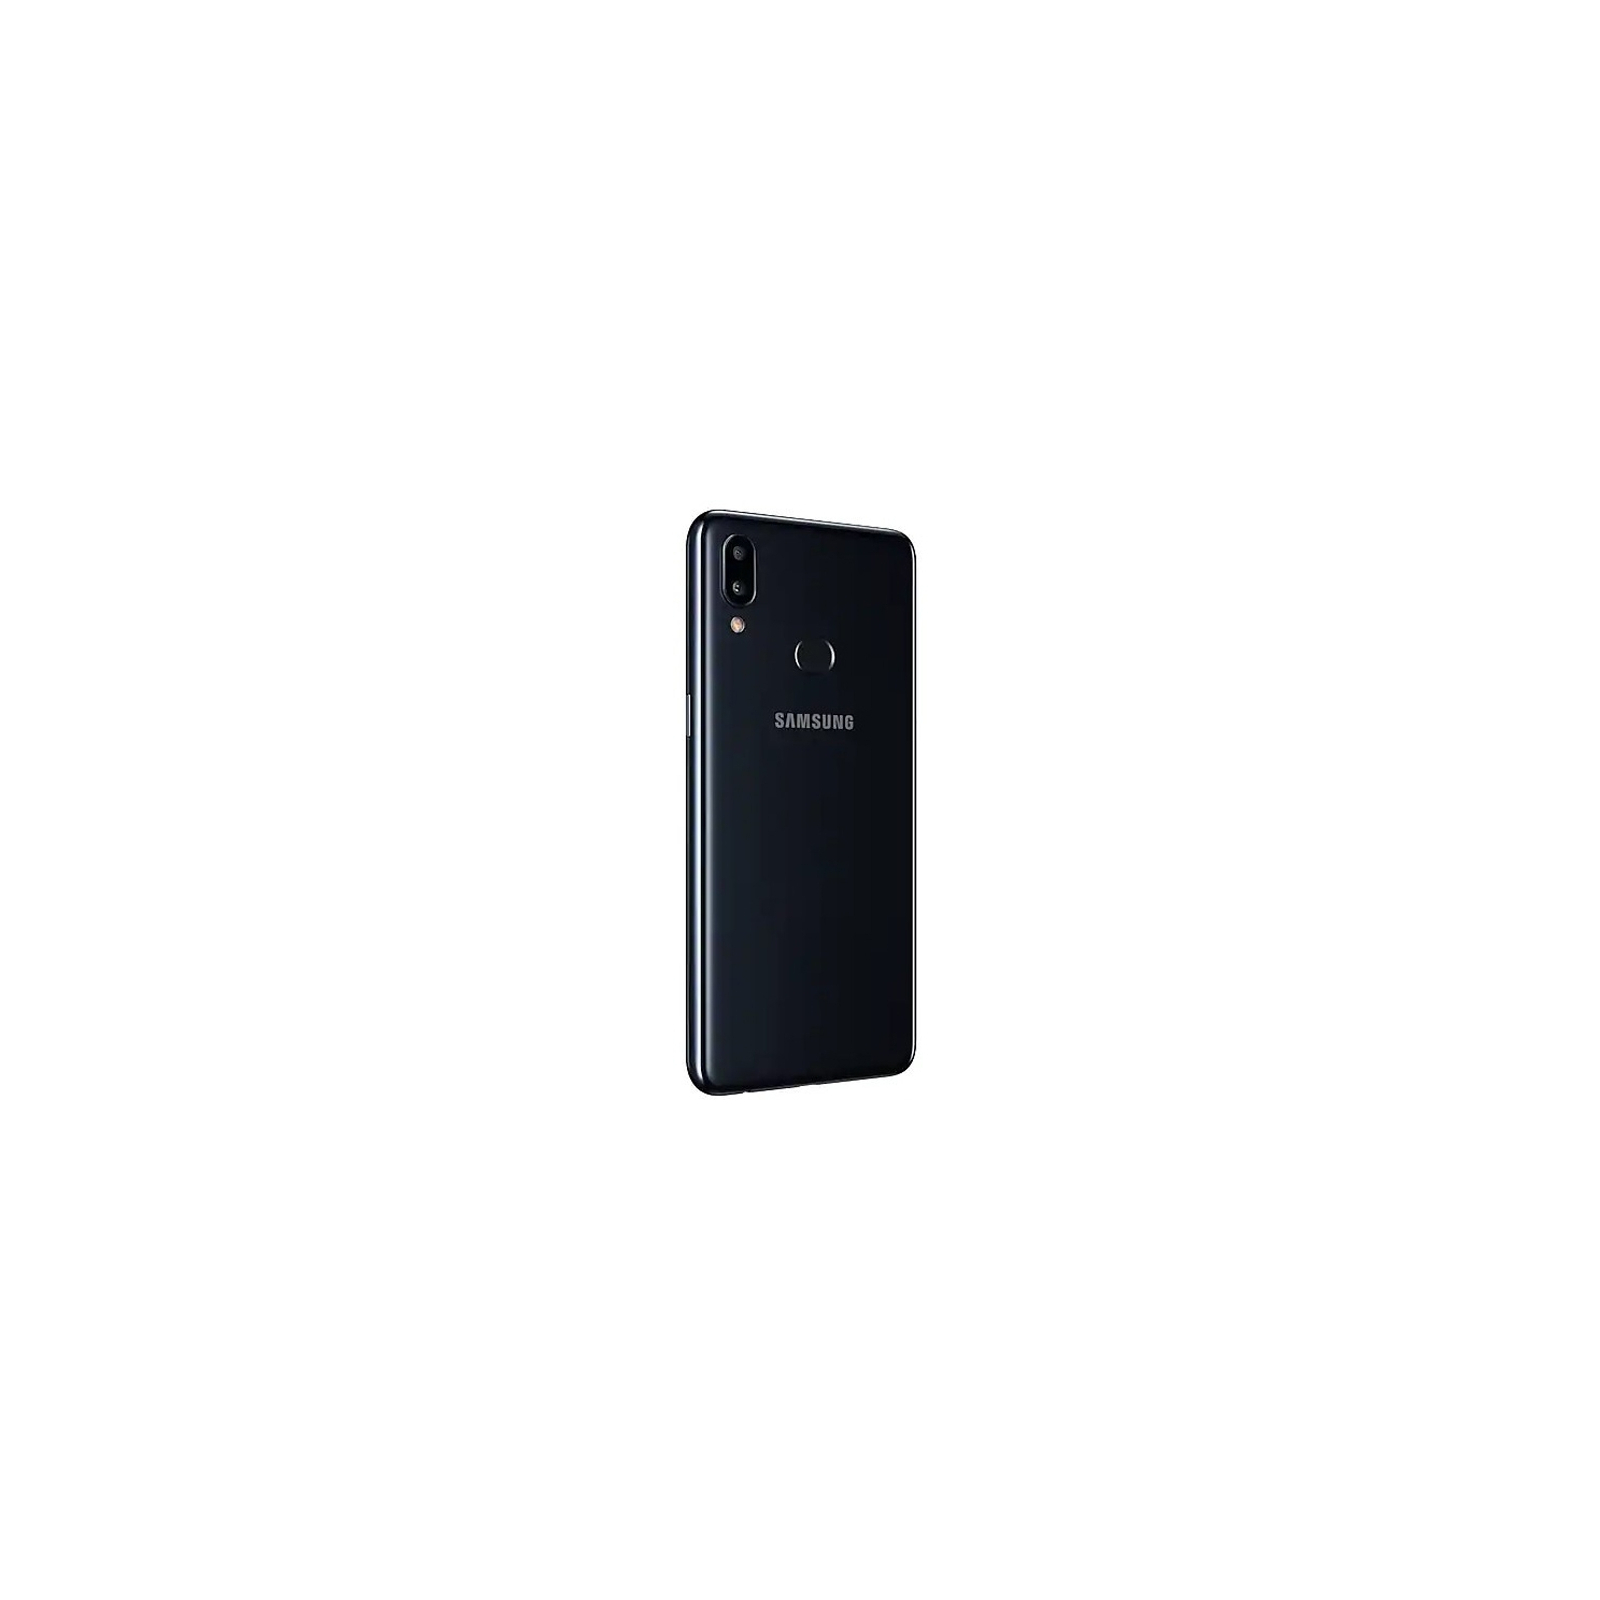 Мобильный телефон Samsung SM-A107F (Galaxy A10s) Black (SM-A107FZKDSEK) изображение 6